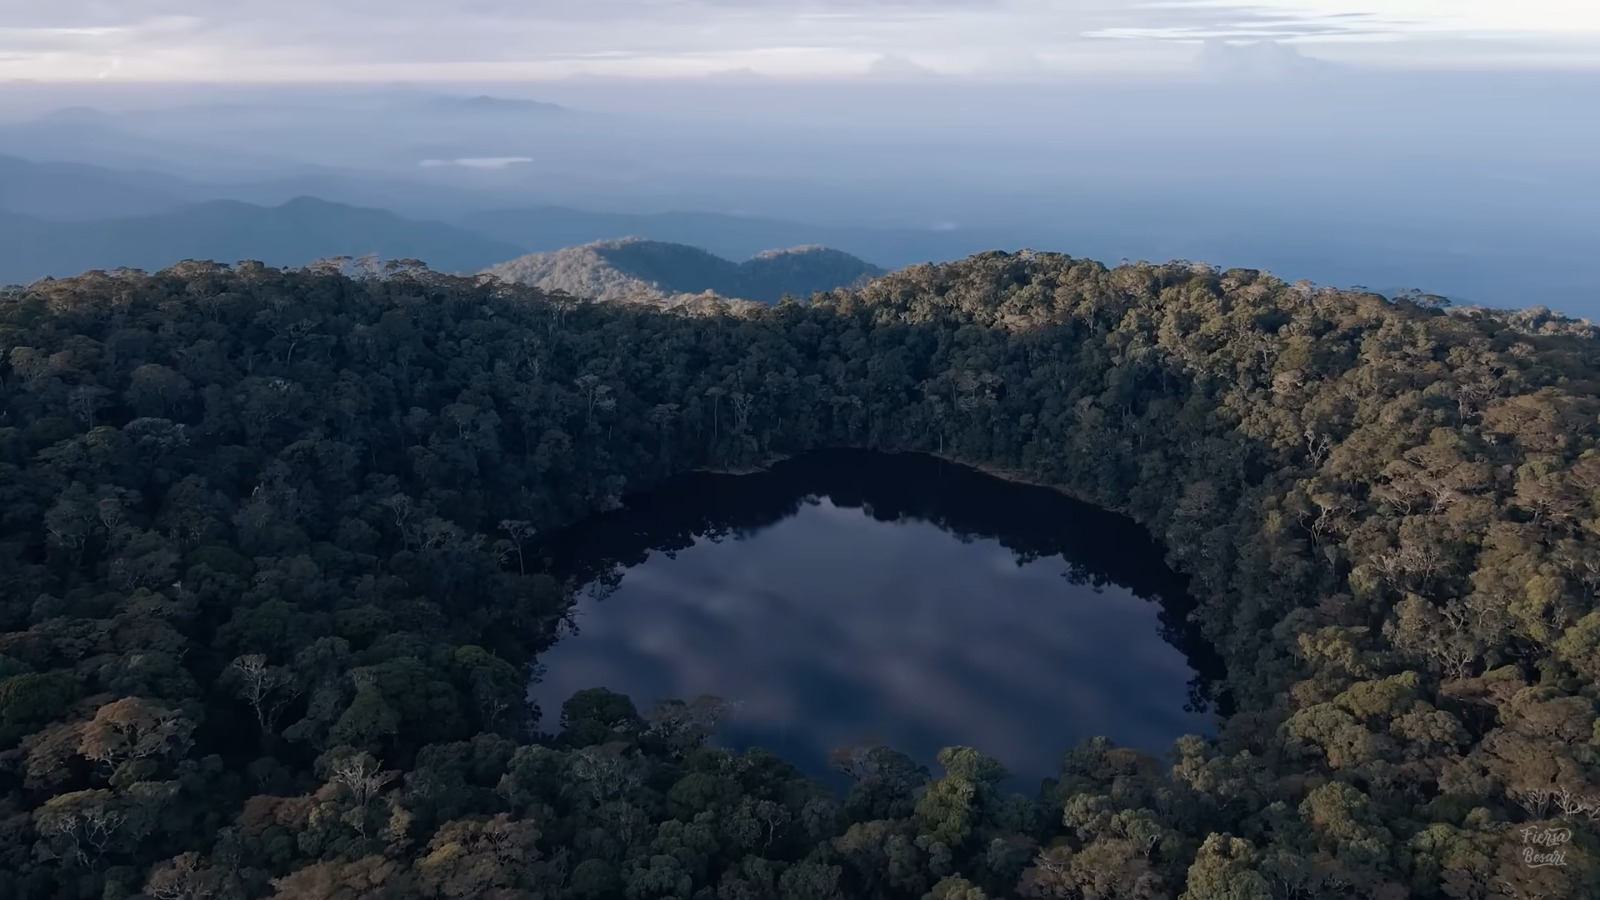 Gunung Patah Bengkulu, Memiliki 3 Puncak, Habitatnya Flora dan Fauna Khas Sumatera